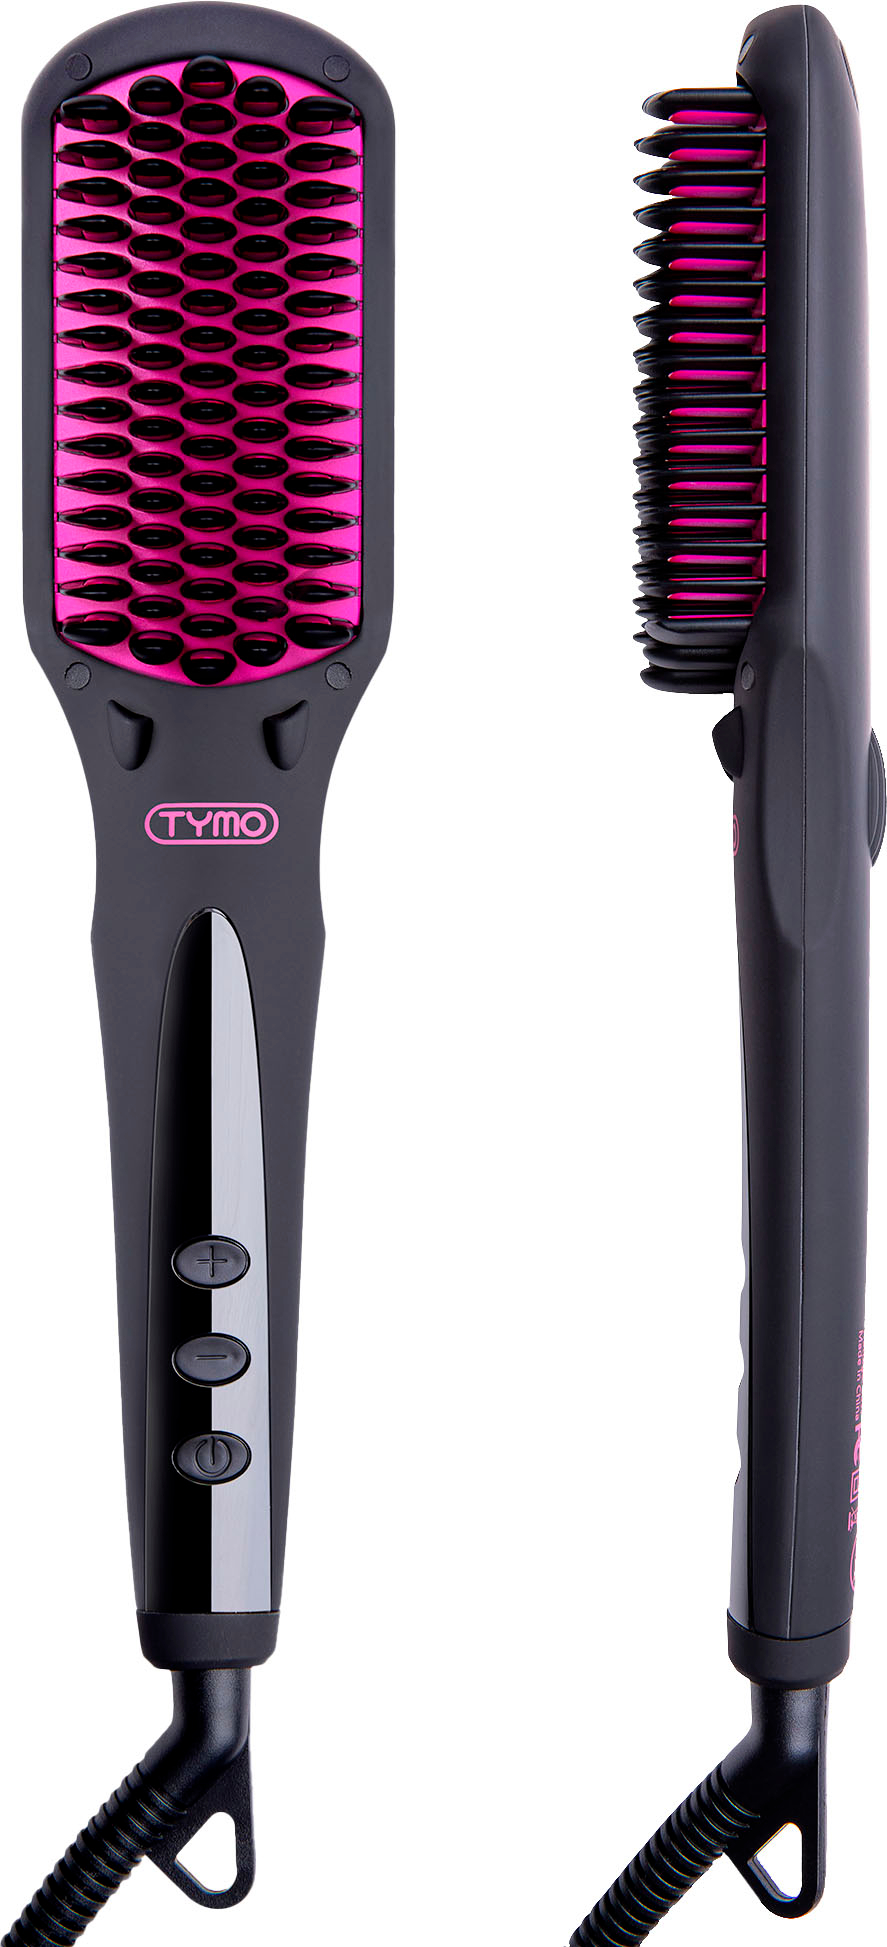 TYMO Ring Plus Ionic Hair Straightener Brush - Hair Straightening